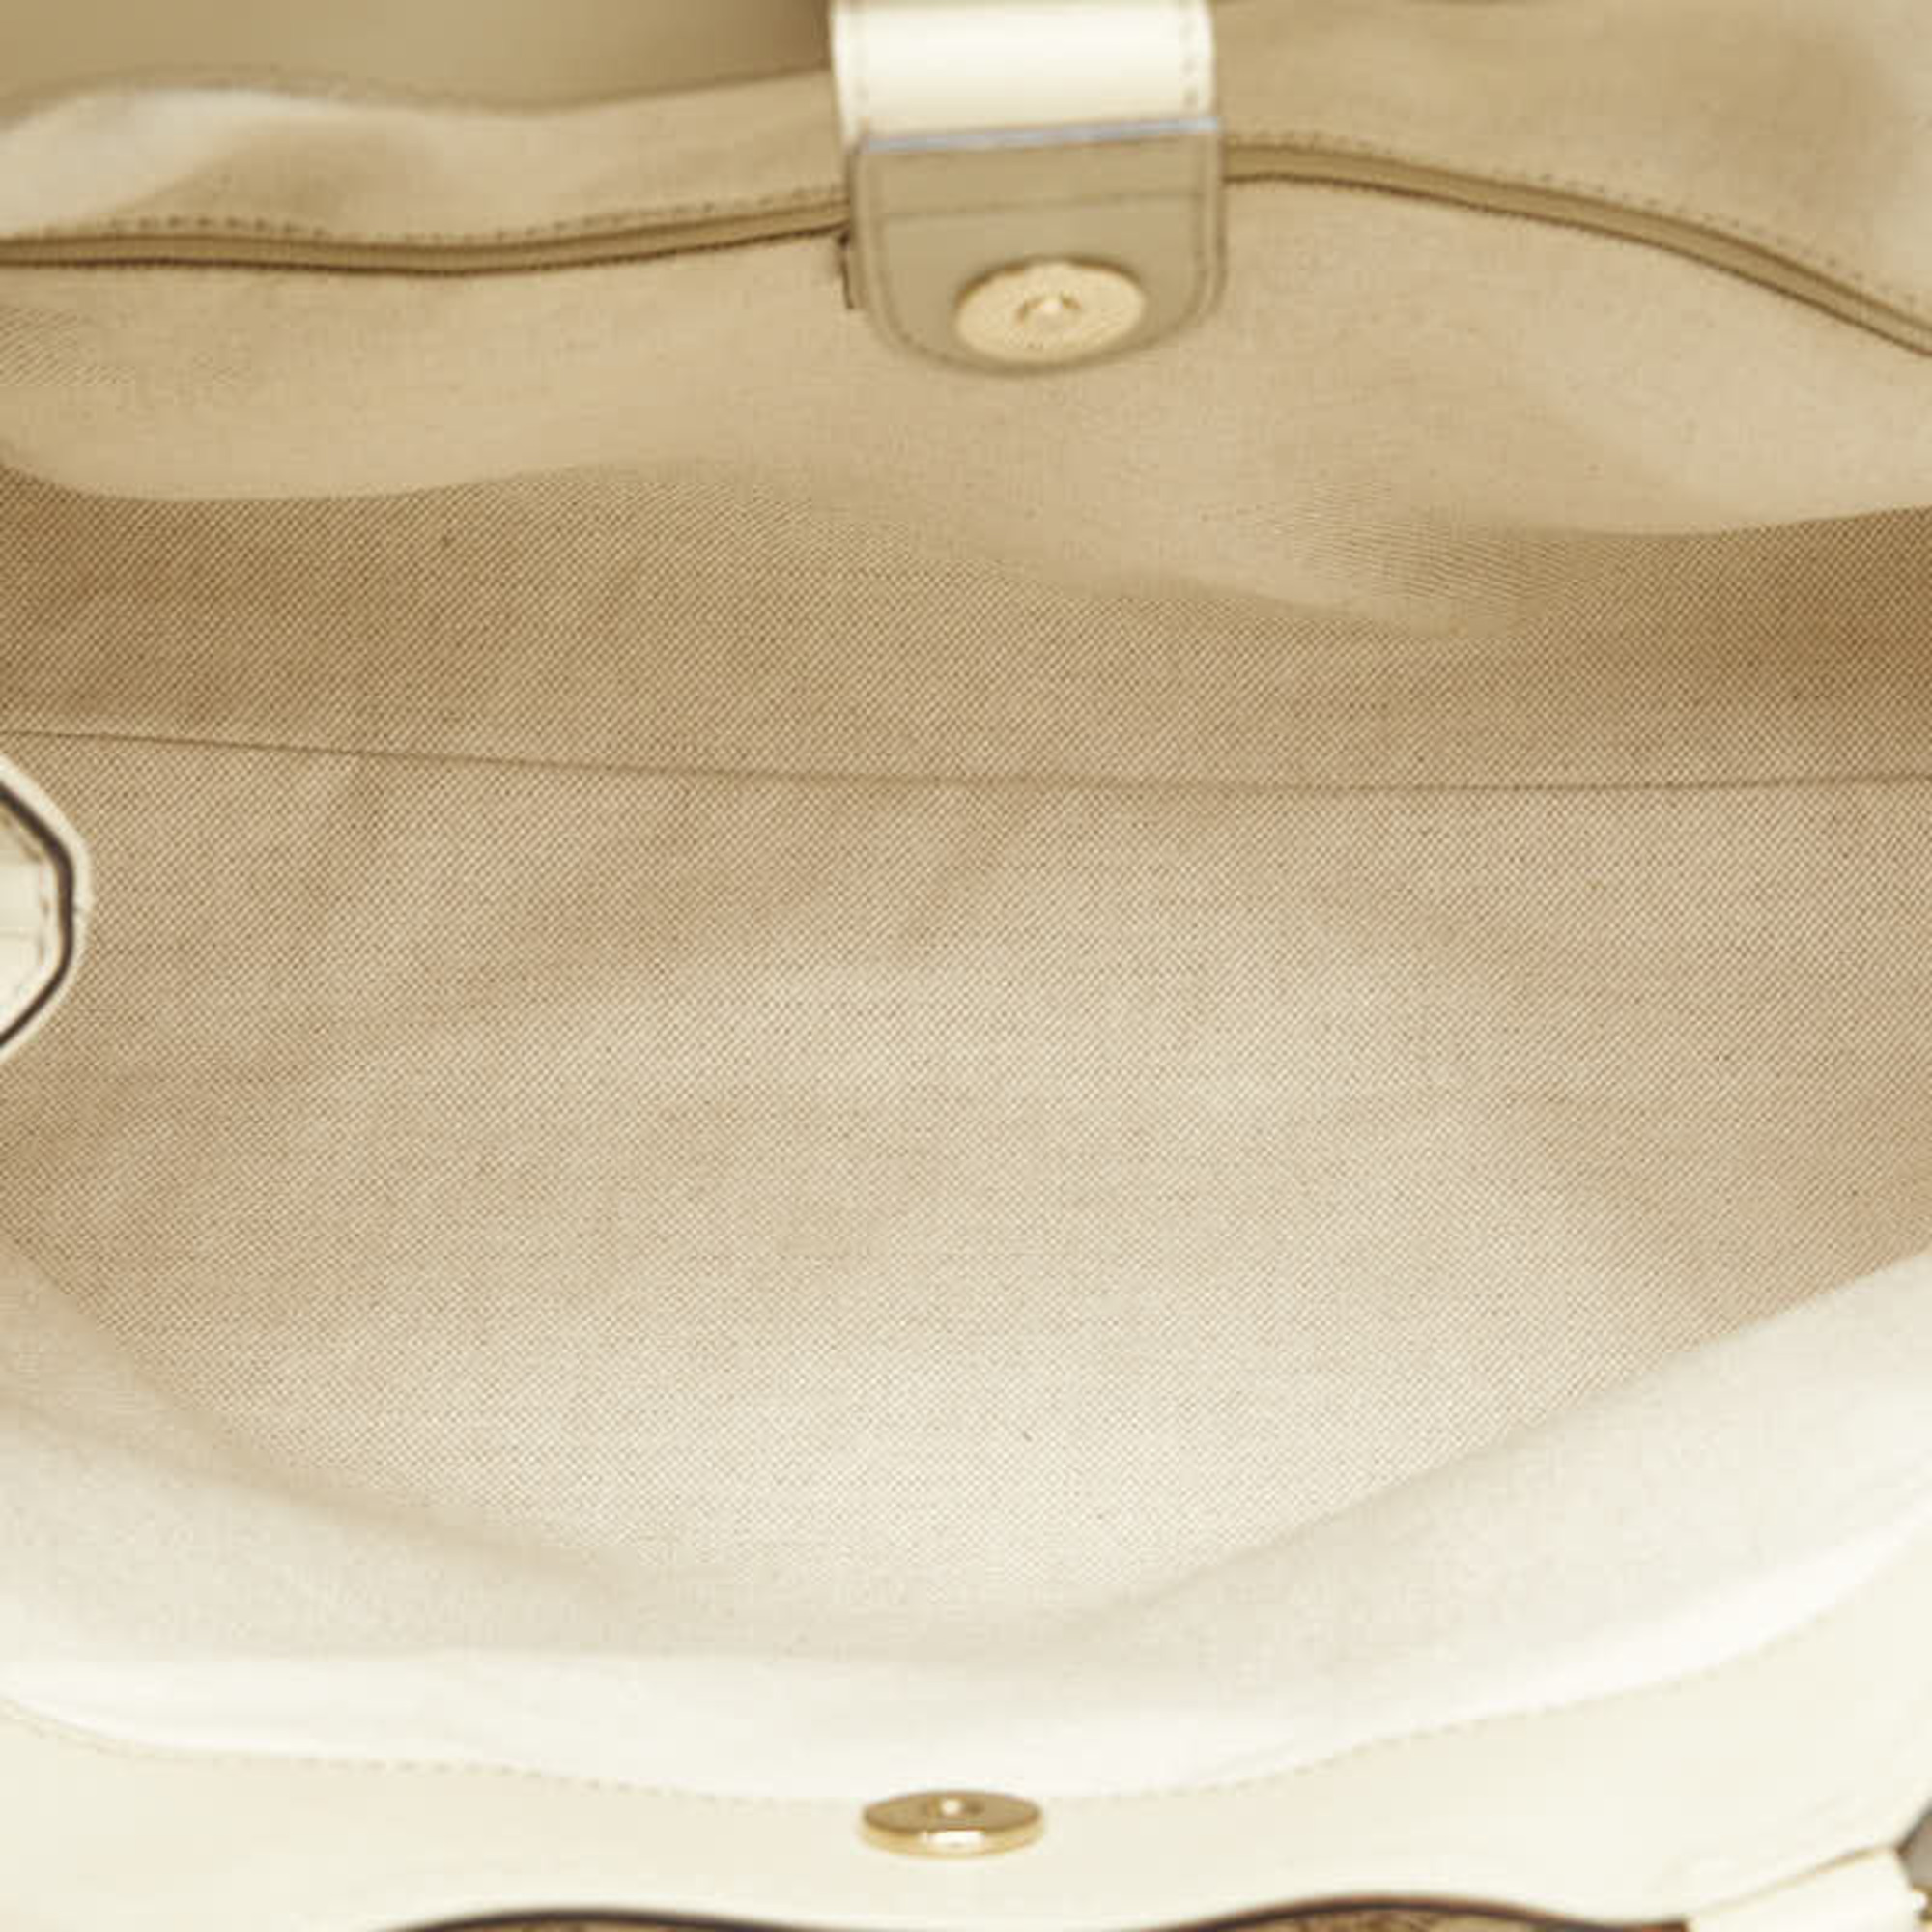 Gucci GG Canvas Sukey Handbag Tote Bag 211944 Beige White Leather Women's GUCCI